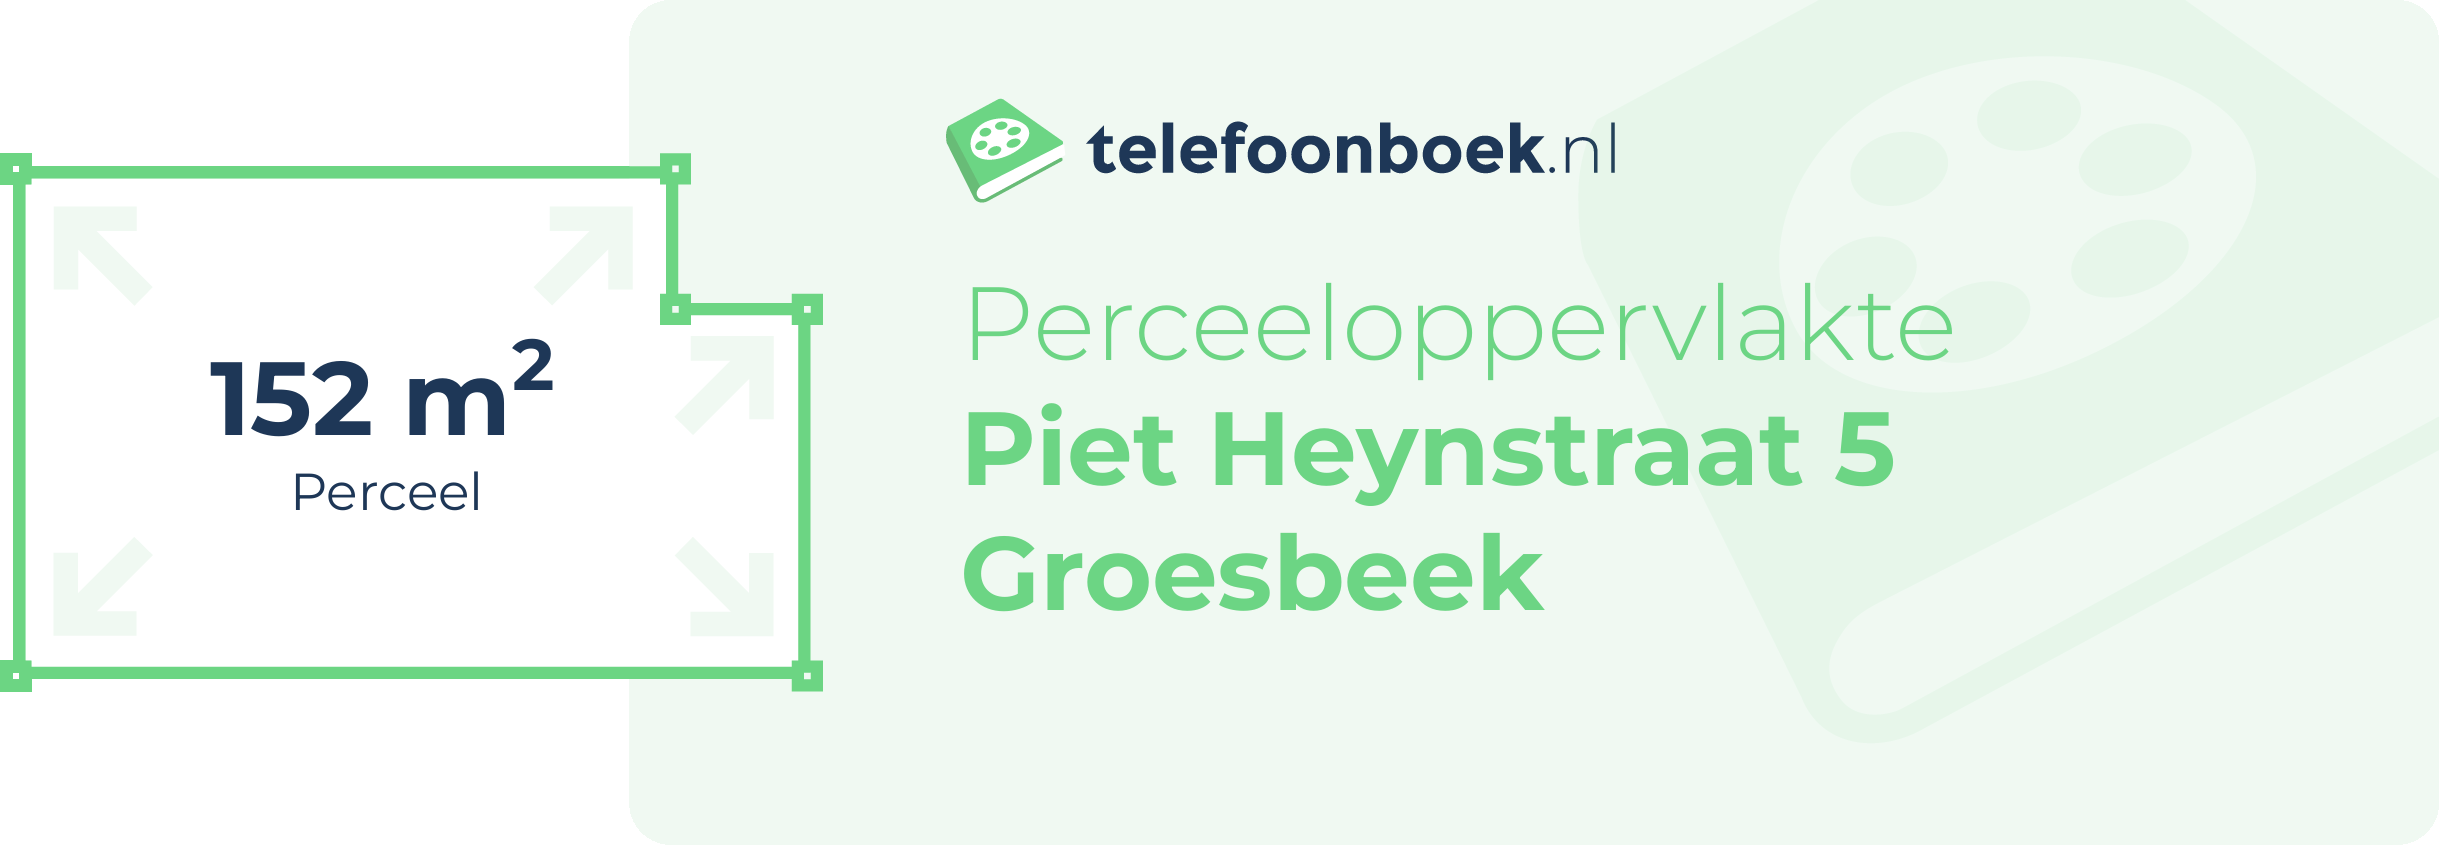 Perceeloppervlakte Piet Heynstraat 5 Groesbeek